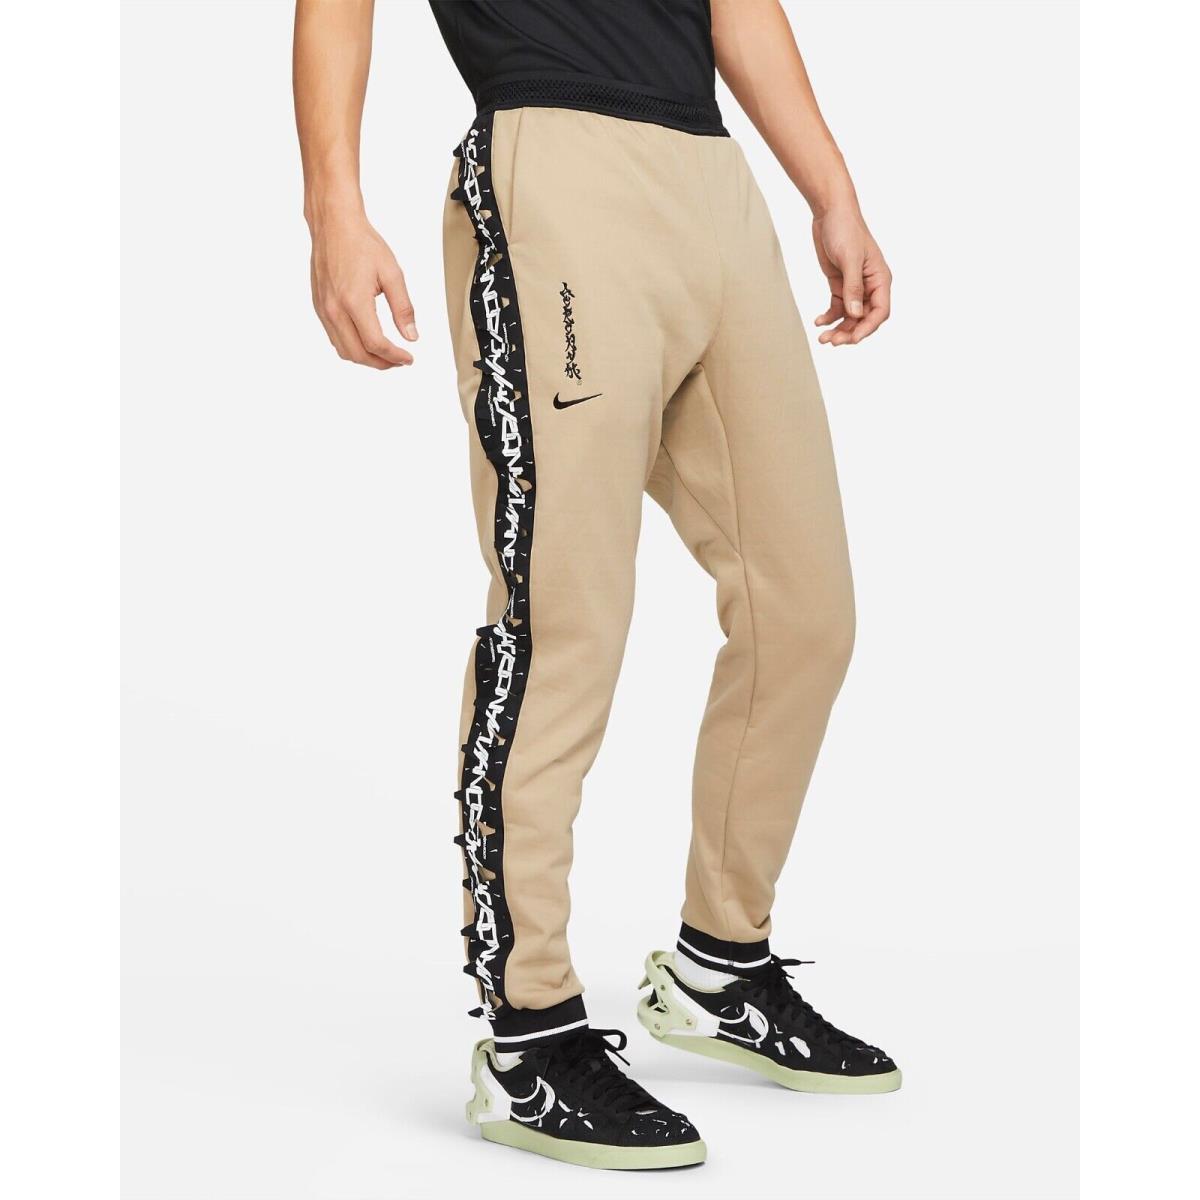 Nike x Acronym Therma-fit Knit Pants Men s SZ XL Khaki/black CU0470-247